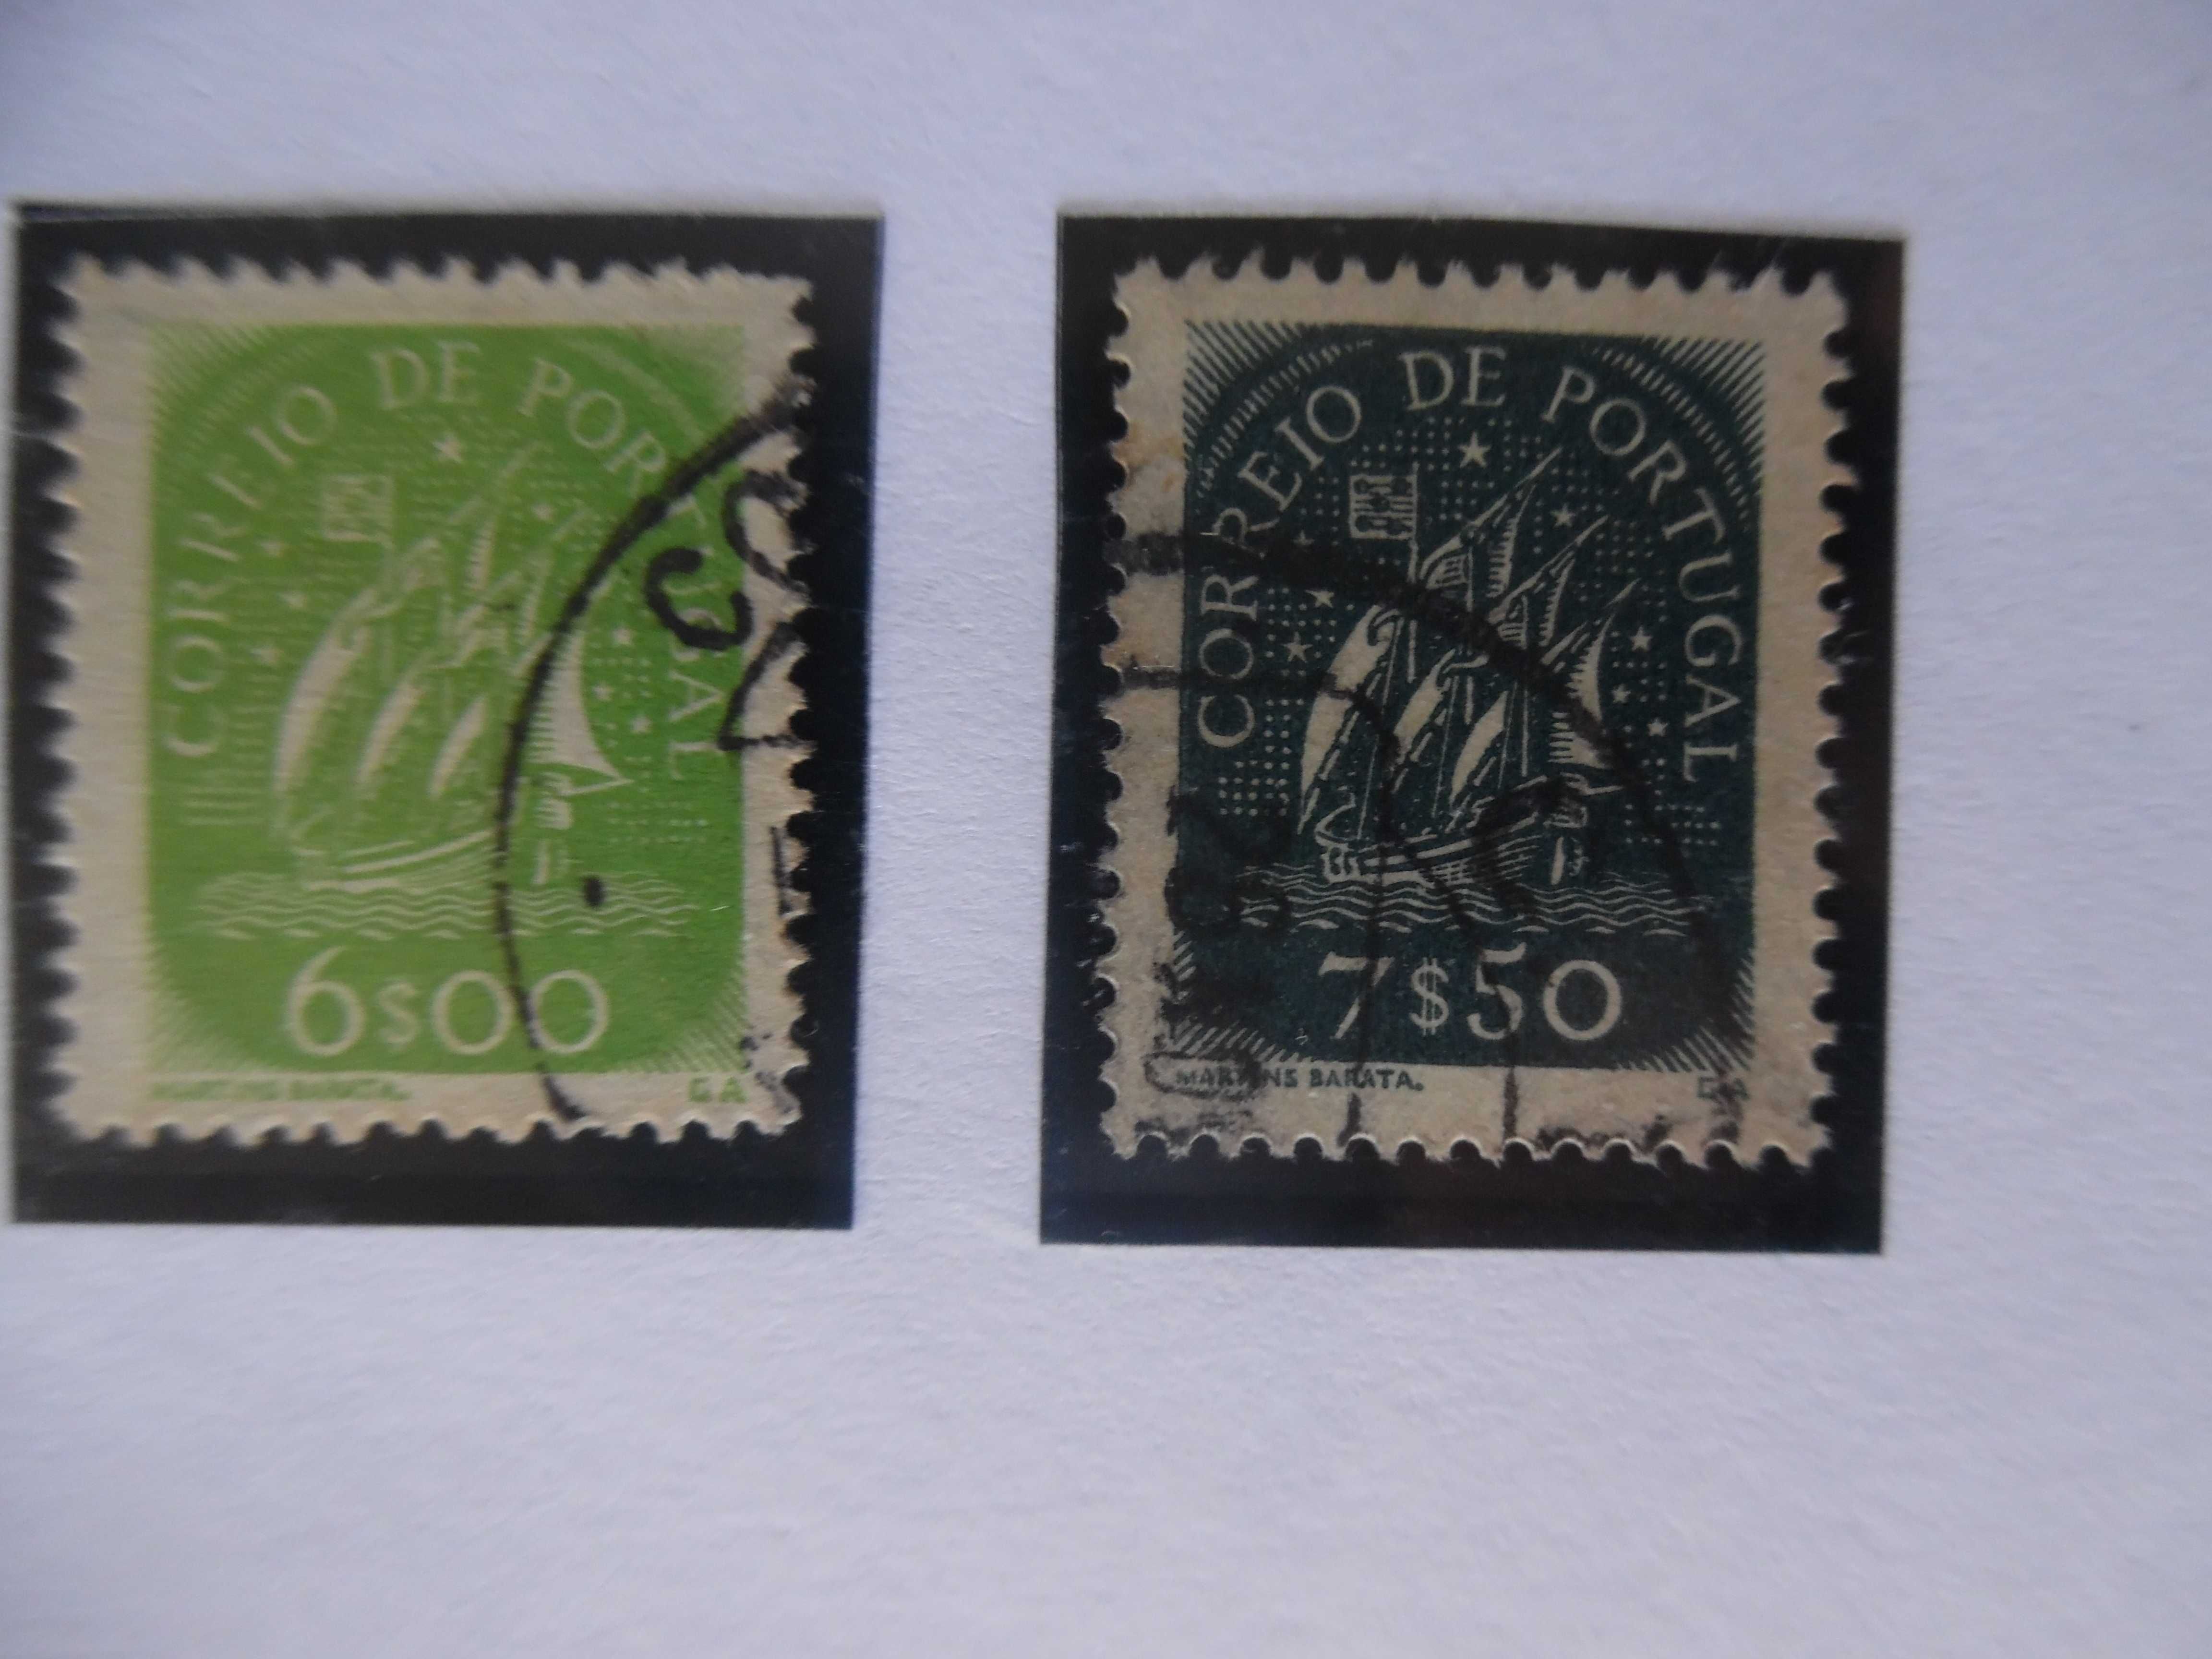 Selos Portugal 1948/49-Caravela Novos Valores Completa usados/novo